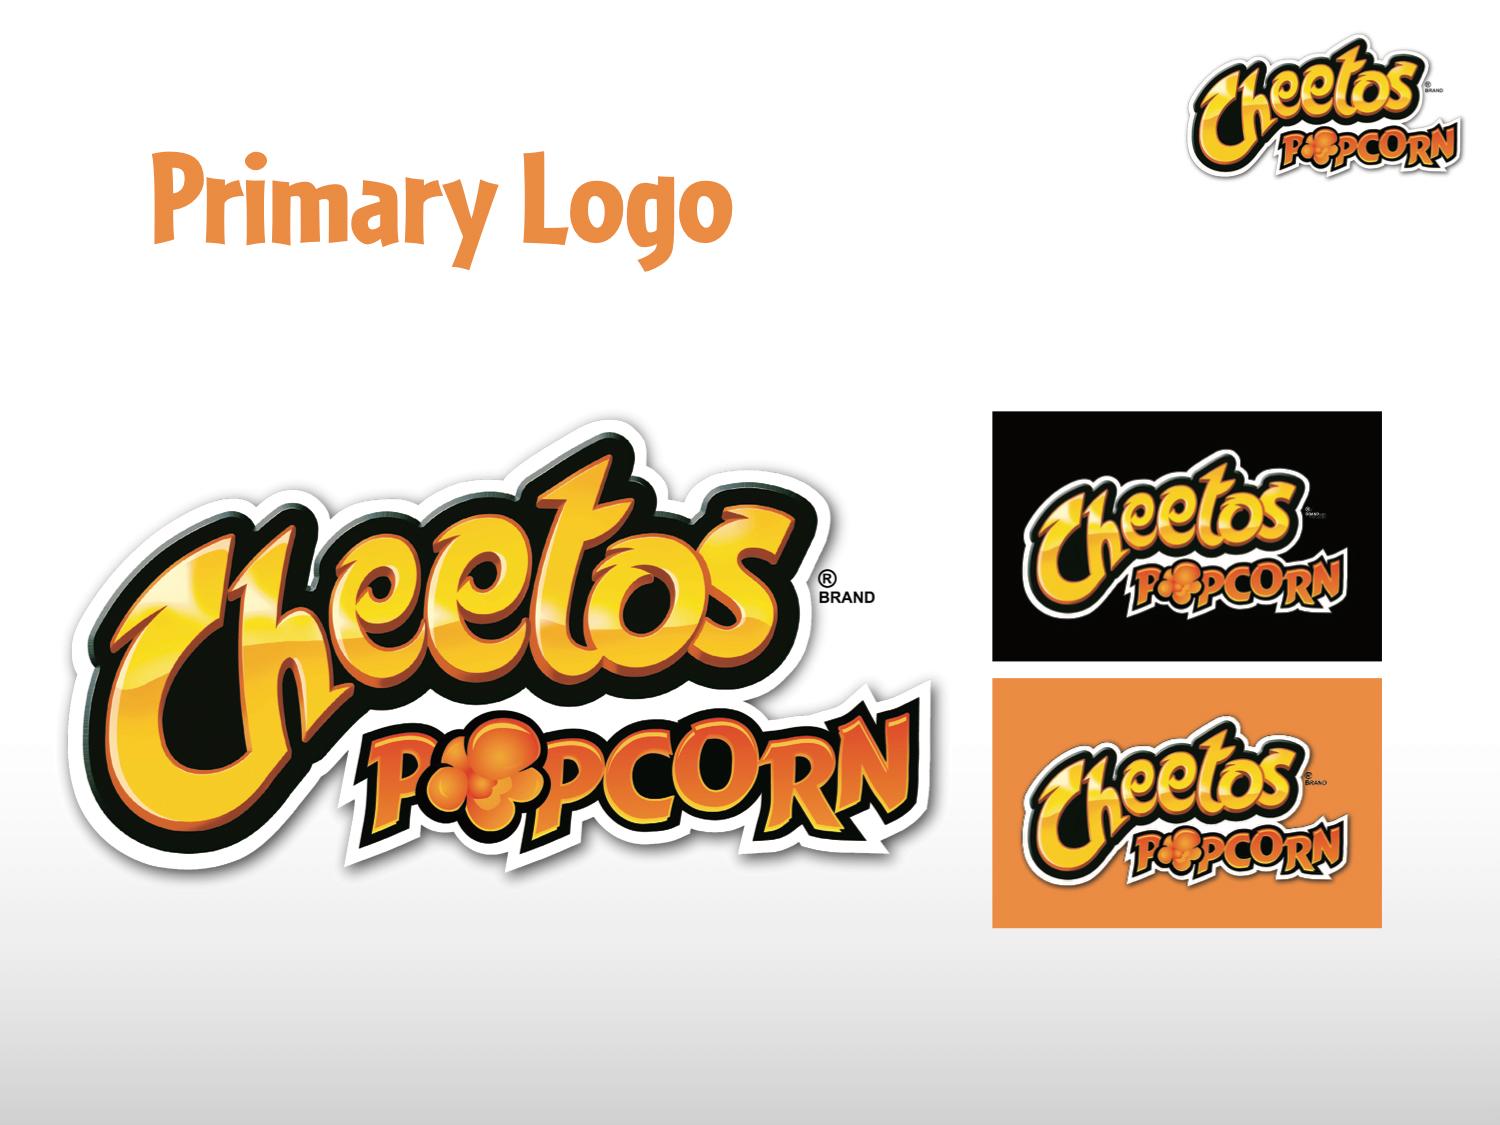 Cheetos Logo - CHEETOS POPCORN LOGO & STYLE GUIDE